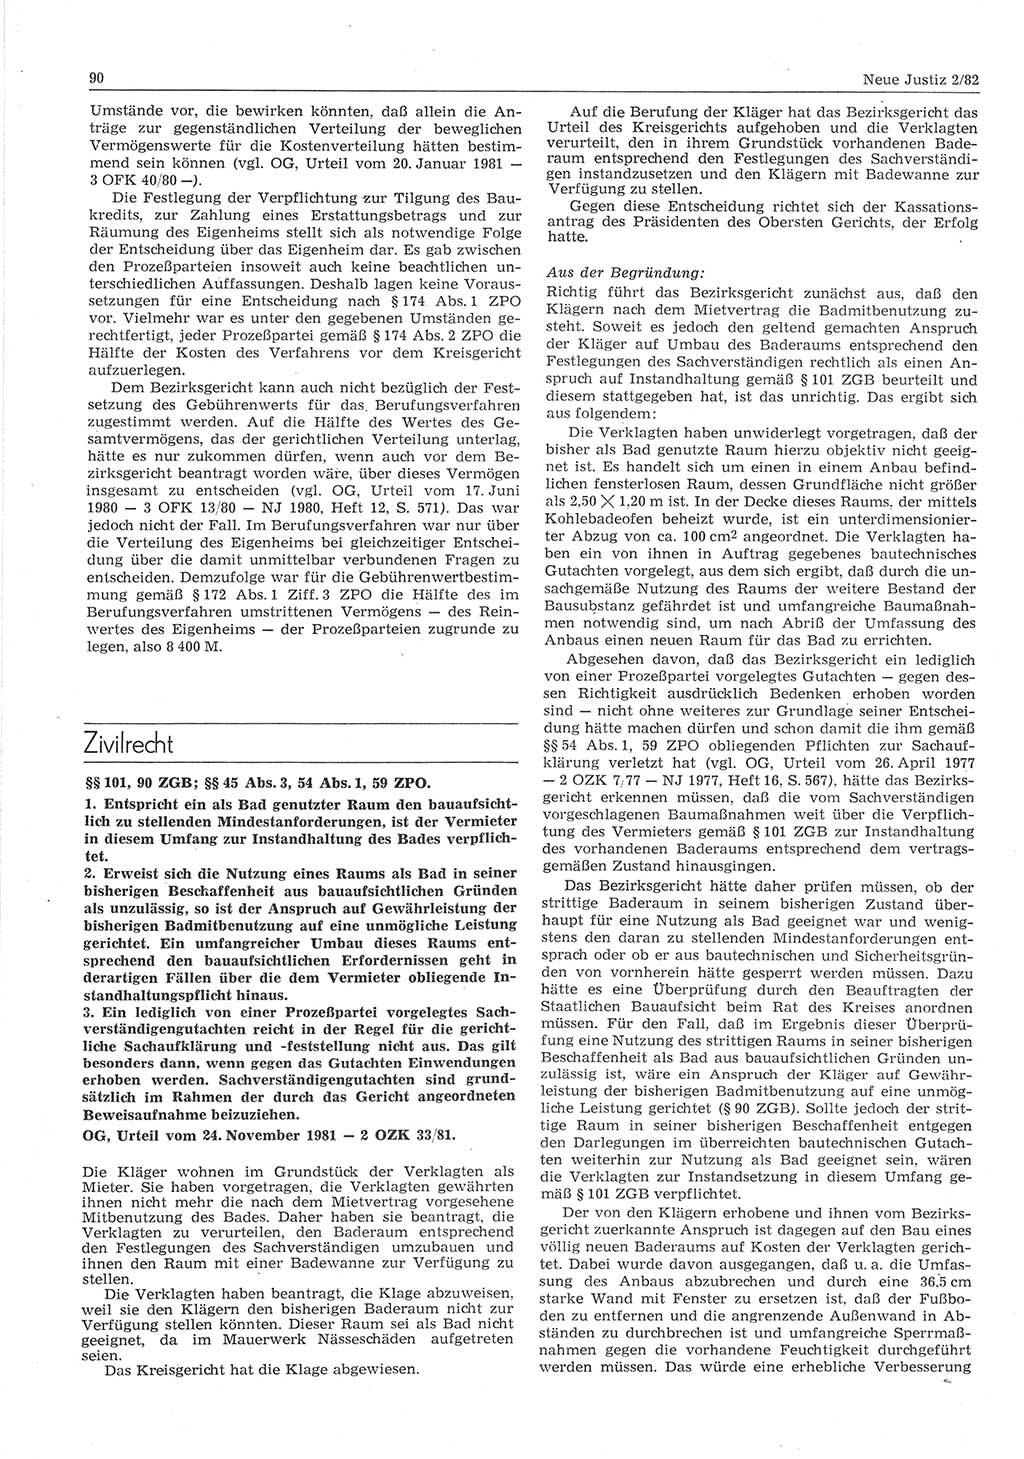 Neue Justiz (NJ), Zeitschrift für sozialistisches Recht und Gesetzlichkeit [Deutsche Demokratische Republik (DDR)], 36. Jahrgang 1982, Seite 90 (NJ DDR 1982, S. 90)